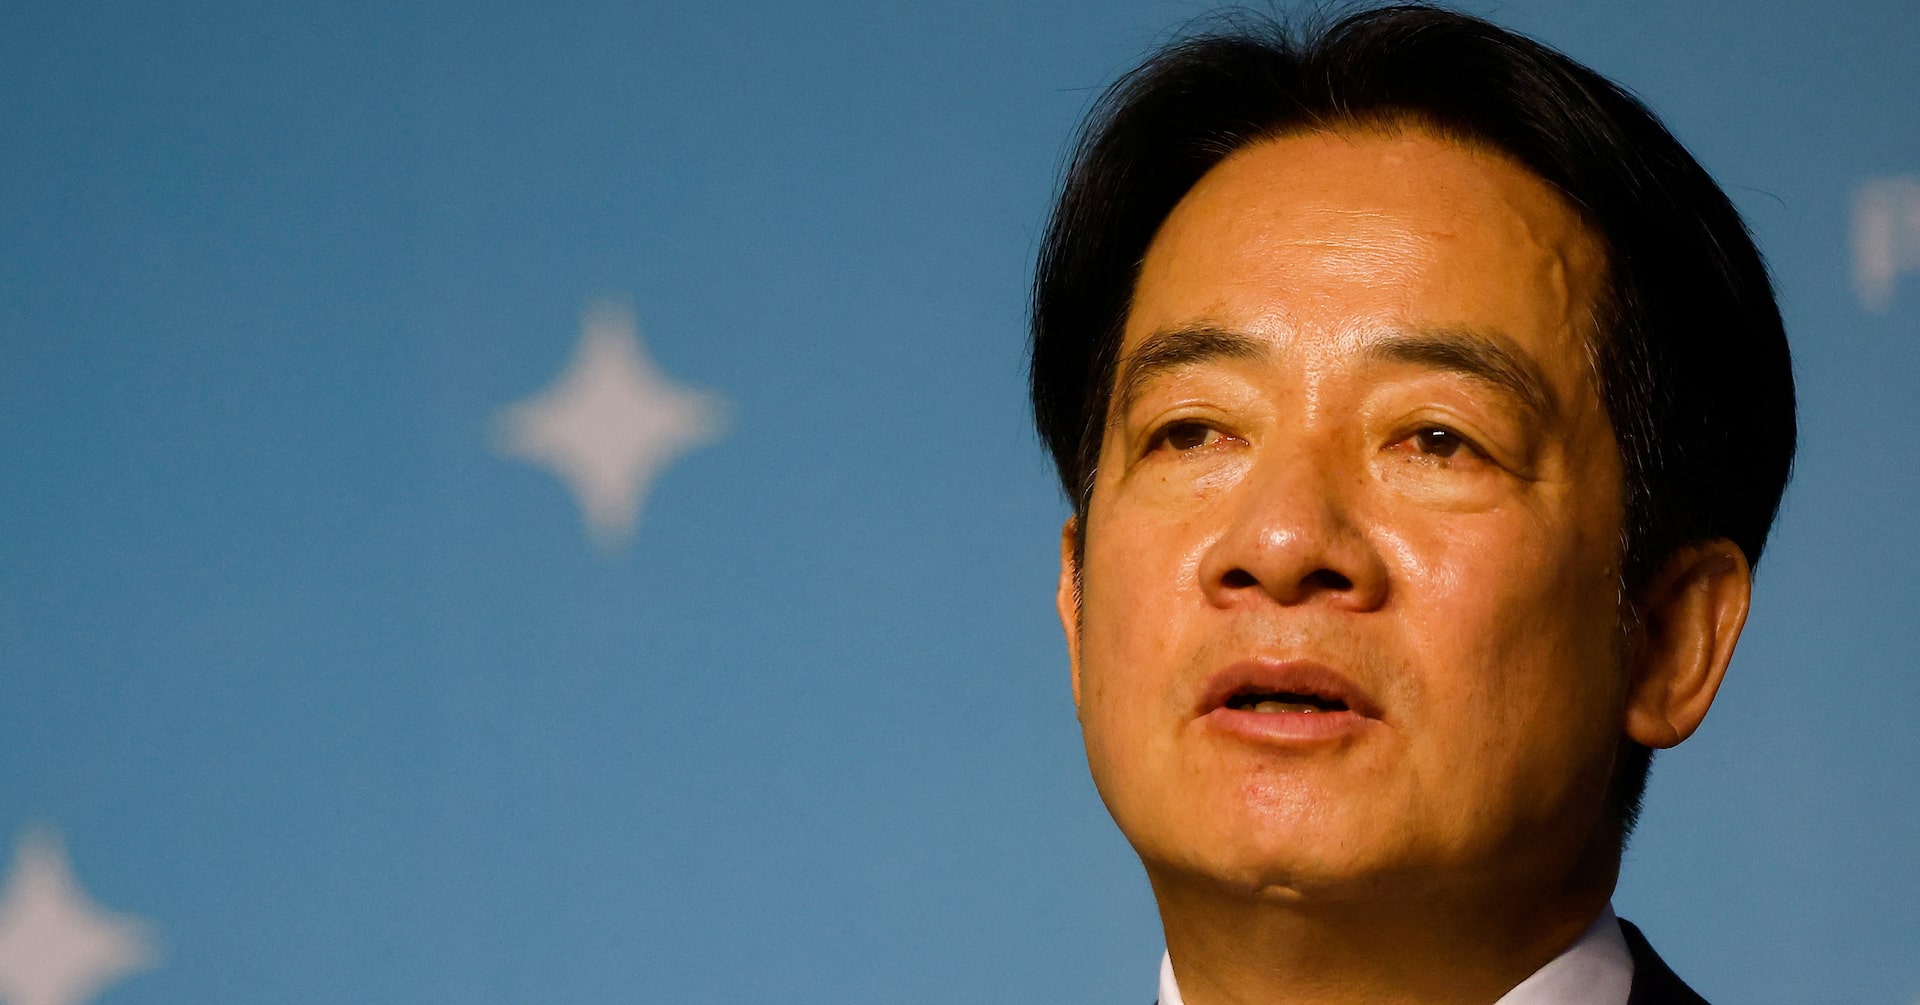 台湾の頼次期総統、20日の就任式で中国との「現状維持」訴えへ